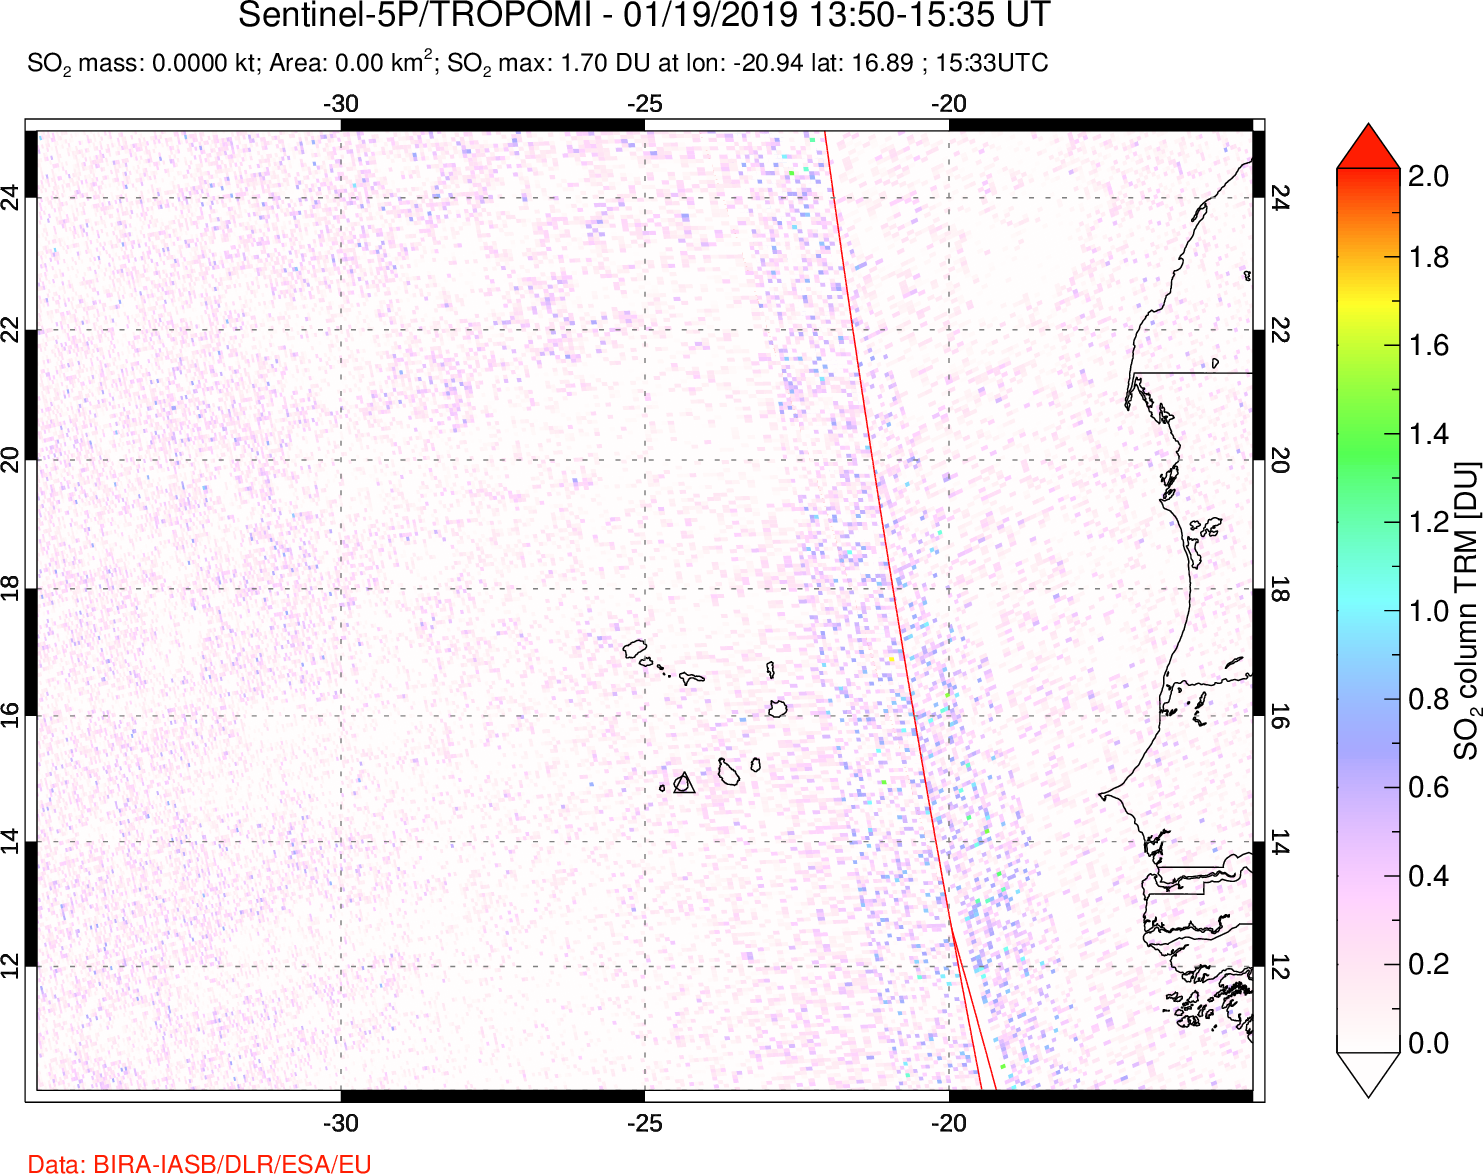 A sulfur dioxide image over Cape Verde Islands on Jan 19, 2019.